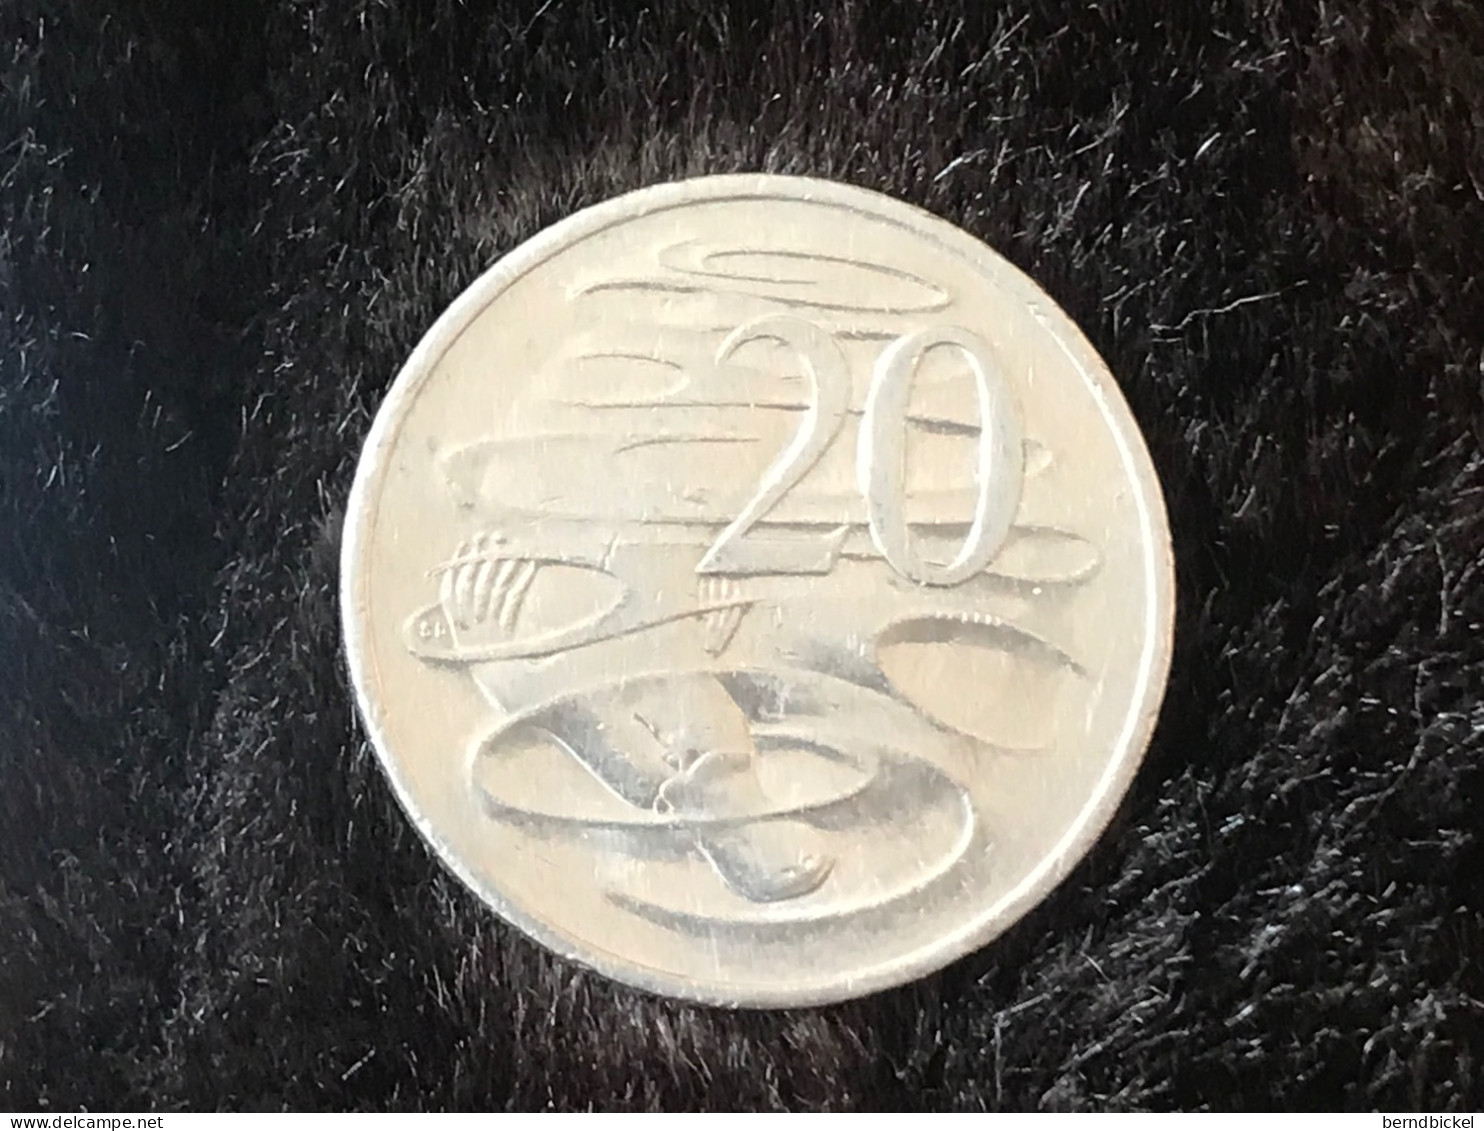 Münze Münzen Umlaufmünze Australien 20 Cent 2006 - 20 Cents